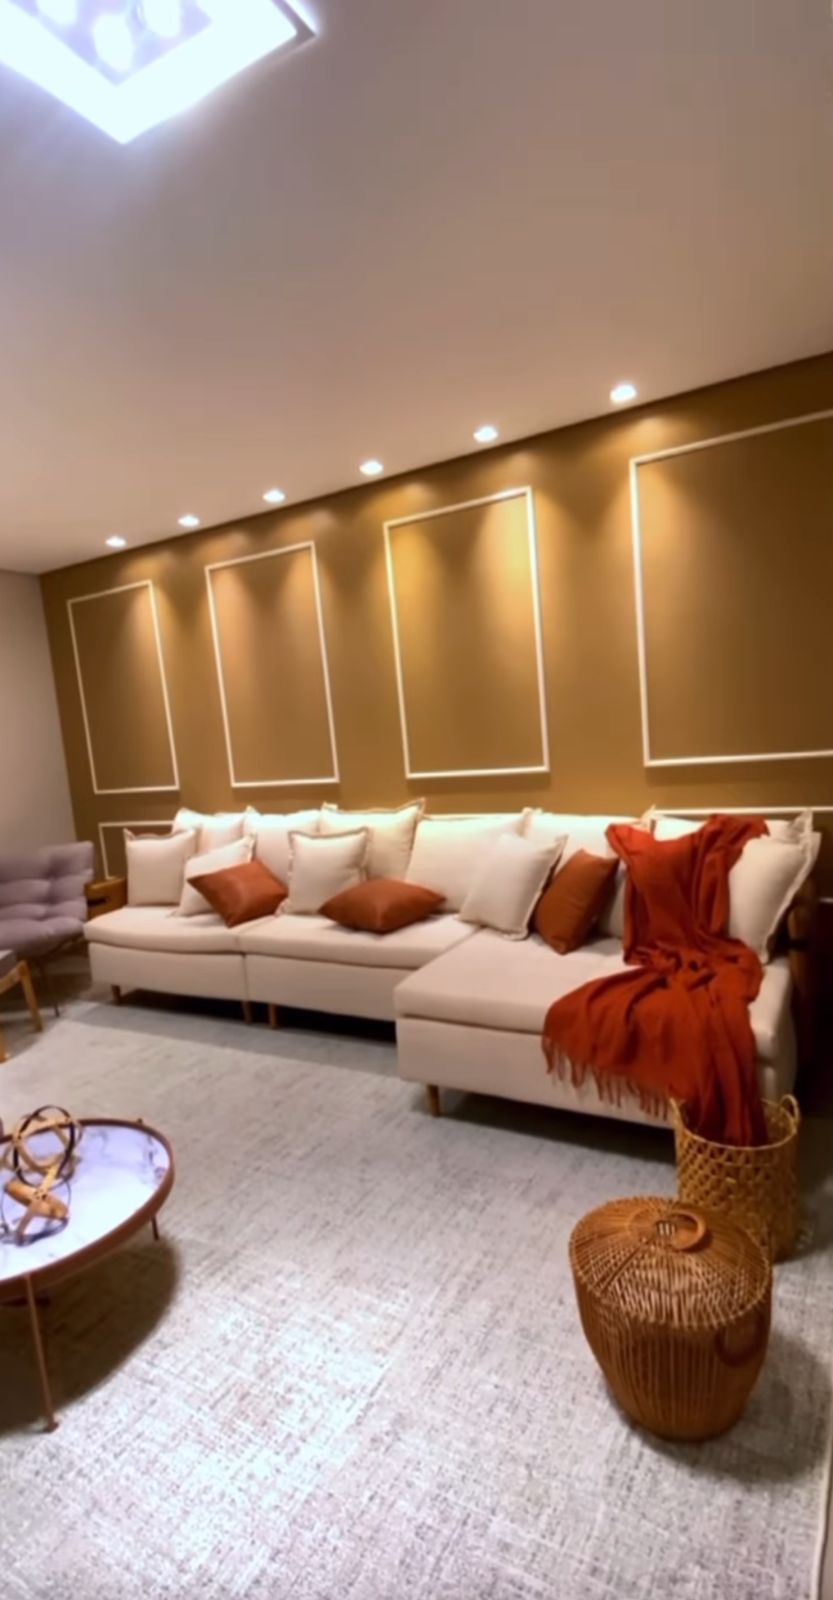 Sala ampla da nova mansão do cantor sertanejo e da influenciadora - Foto Reprodução Instagram